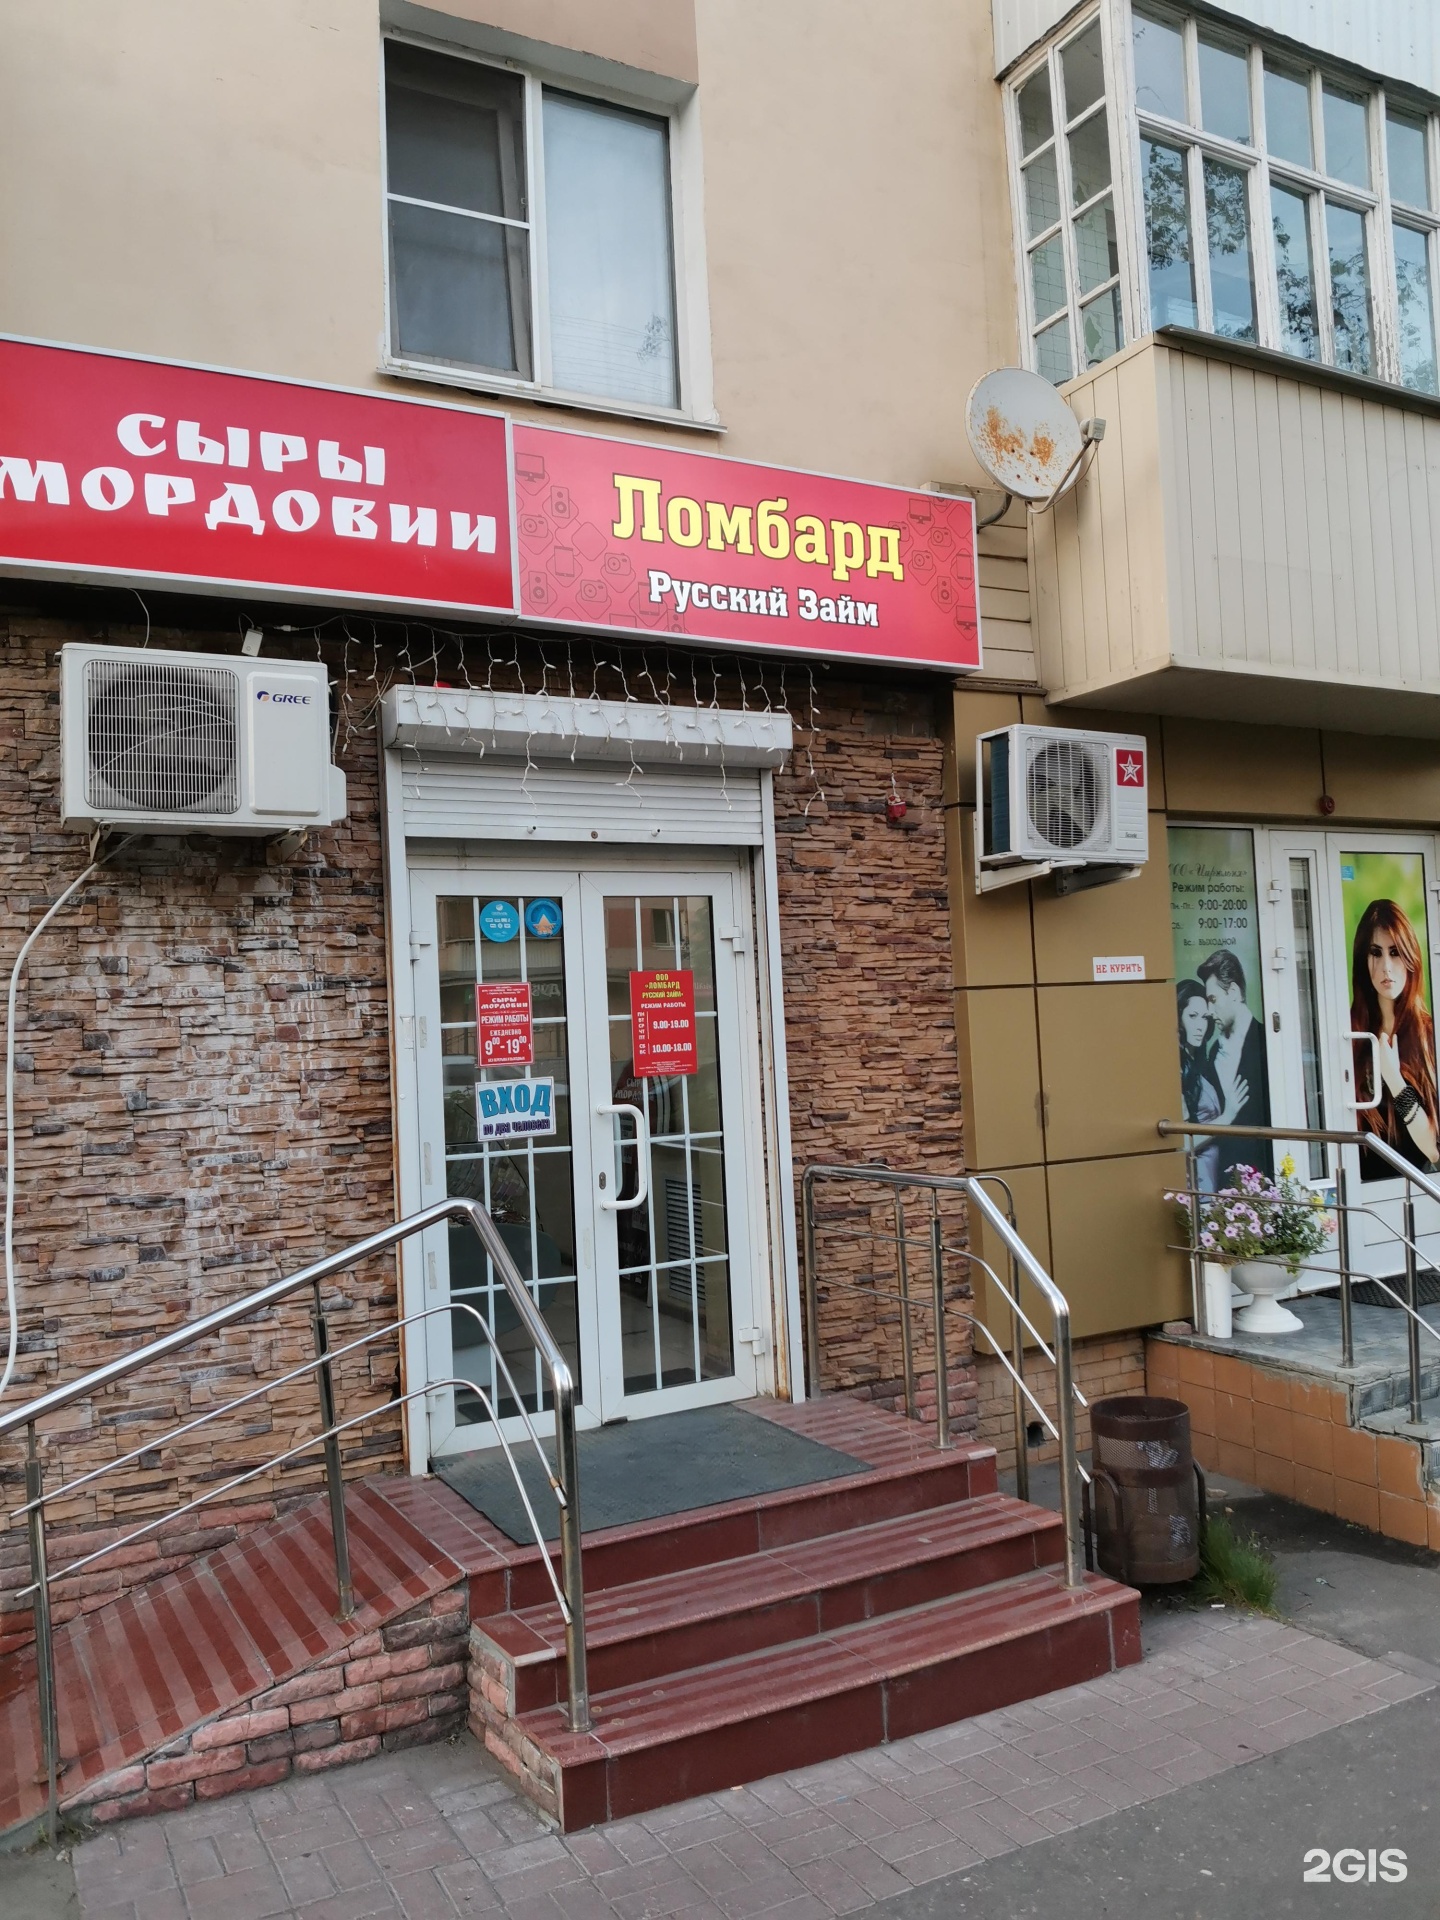 Магазин Маяк Город Саранск